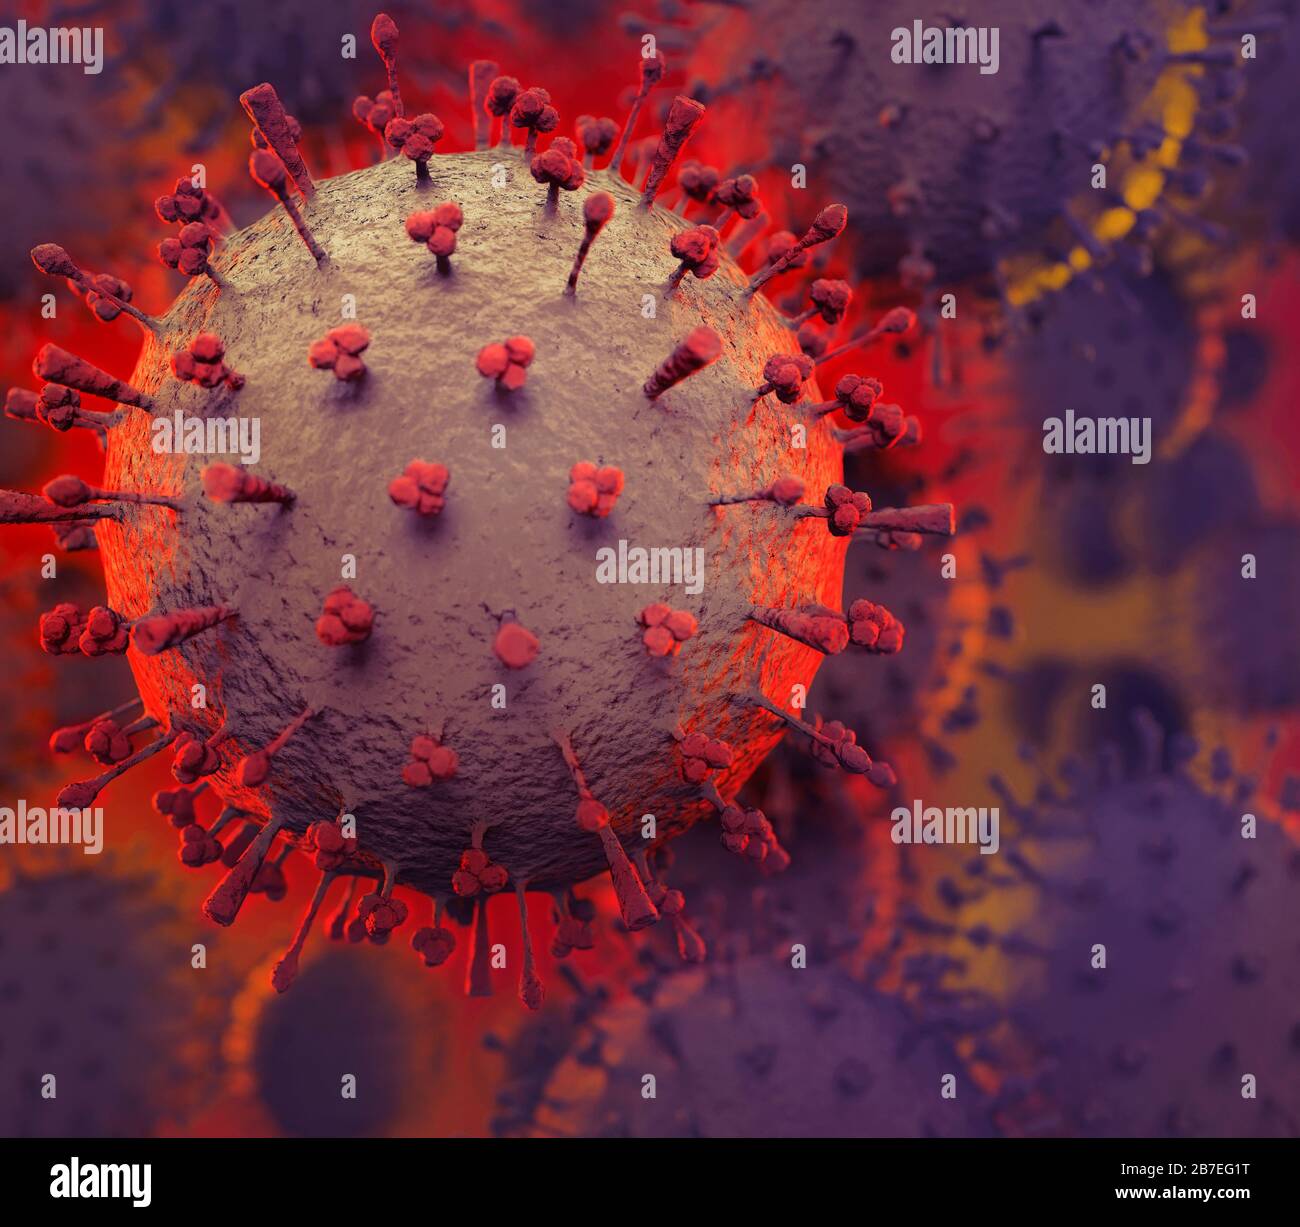 Coronavirus, COVID-19, rendering artistico. Illustrazione 3D concettuale delle particelle del virus Corona. Diffusione di virus, epidemie e pandemia concetto. Foto Stock